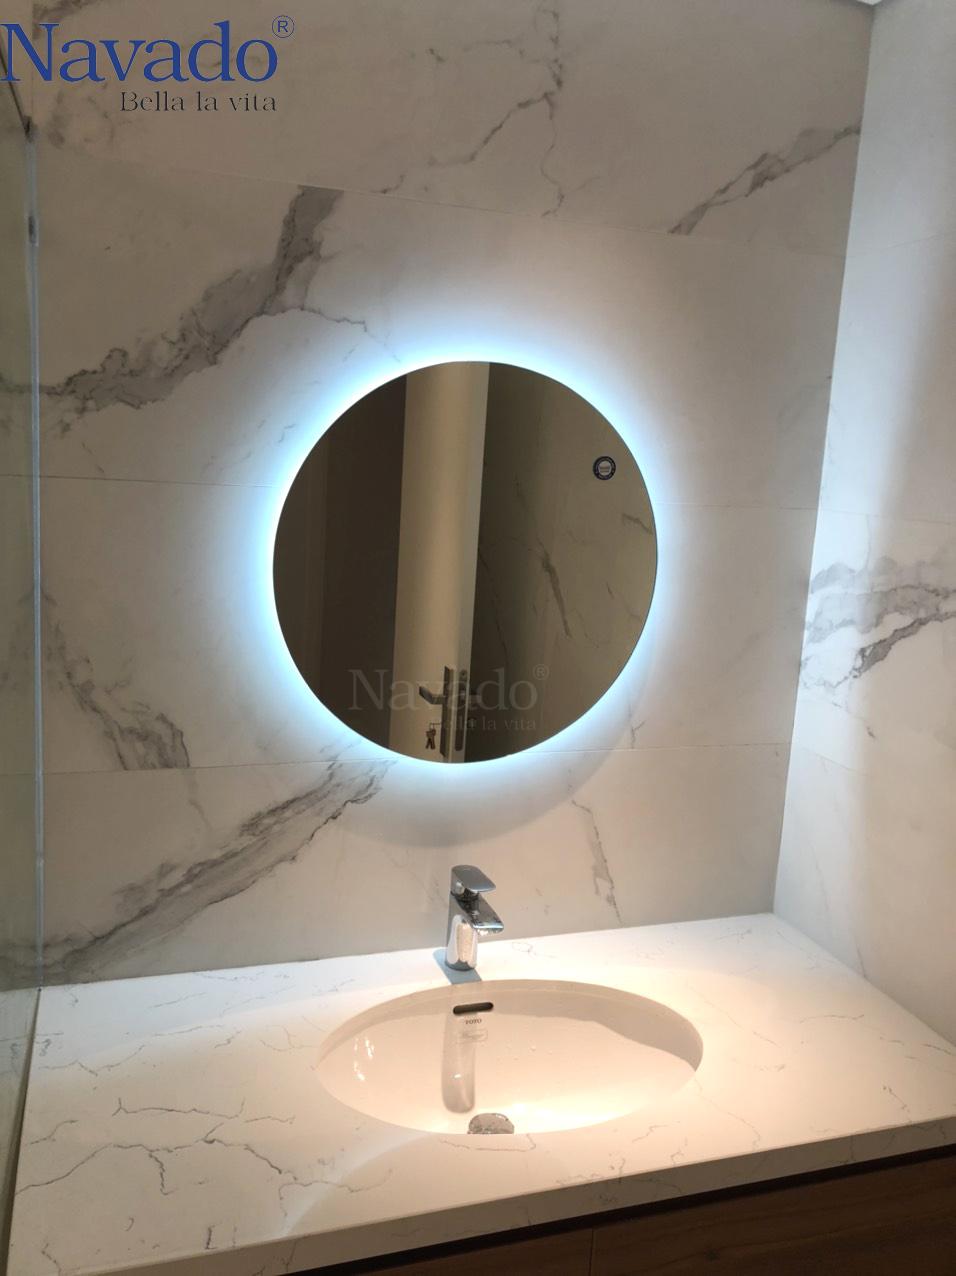 Nhà tắm của bạn sẽ trở nên thật ấm cúng với đèn hắt gương hiện đại. Bất kể là sáng hay tối, đèn hắt gương sẽ mang đến cho bạn ánh sáng chính xác và đủ đem lại cảm giác thoải mái và tiện nghi cho người sử dụng.